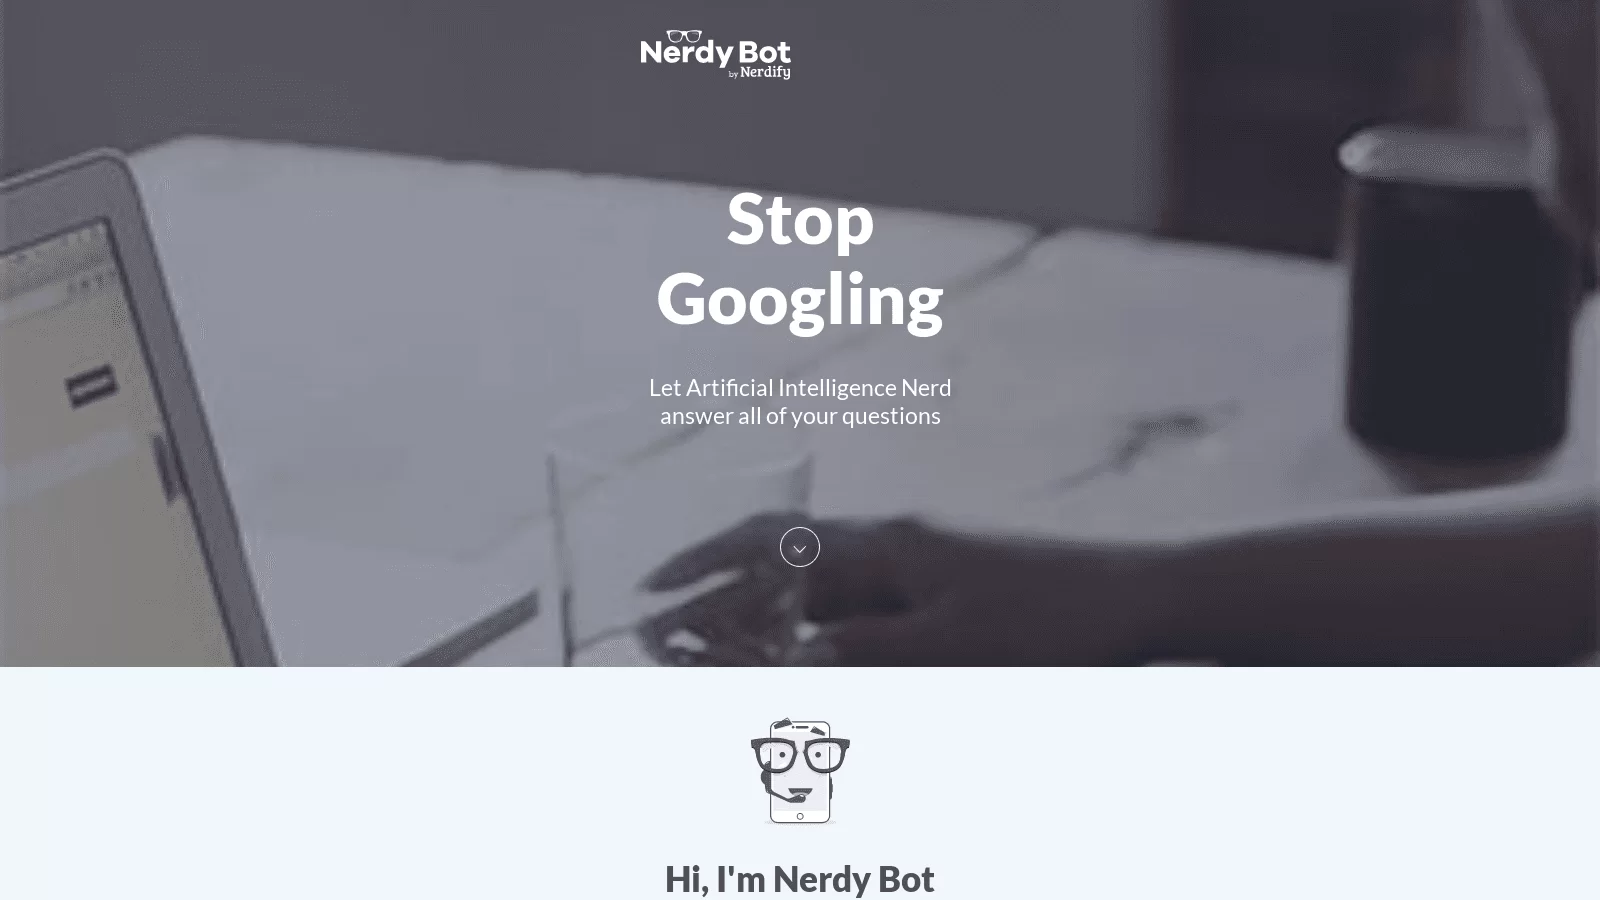 Nerdify Bot